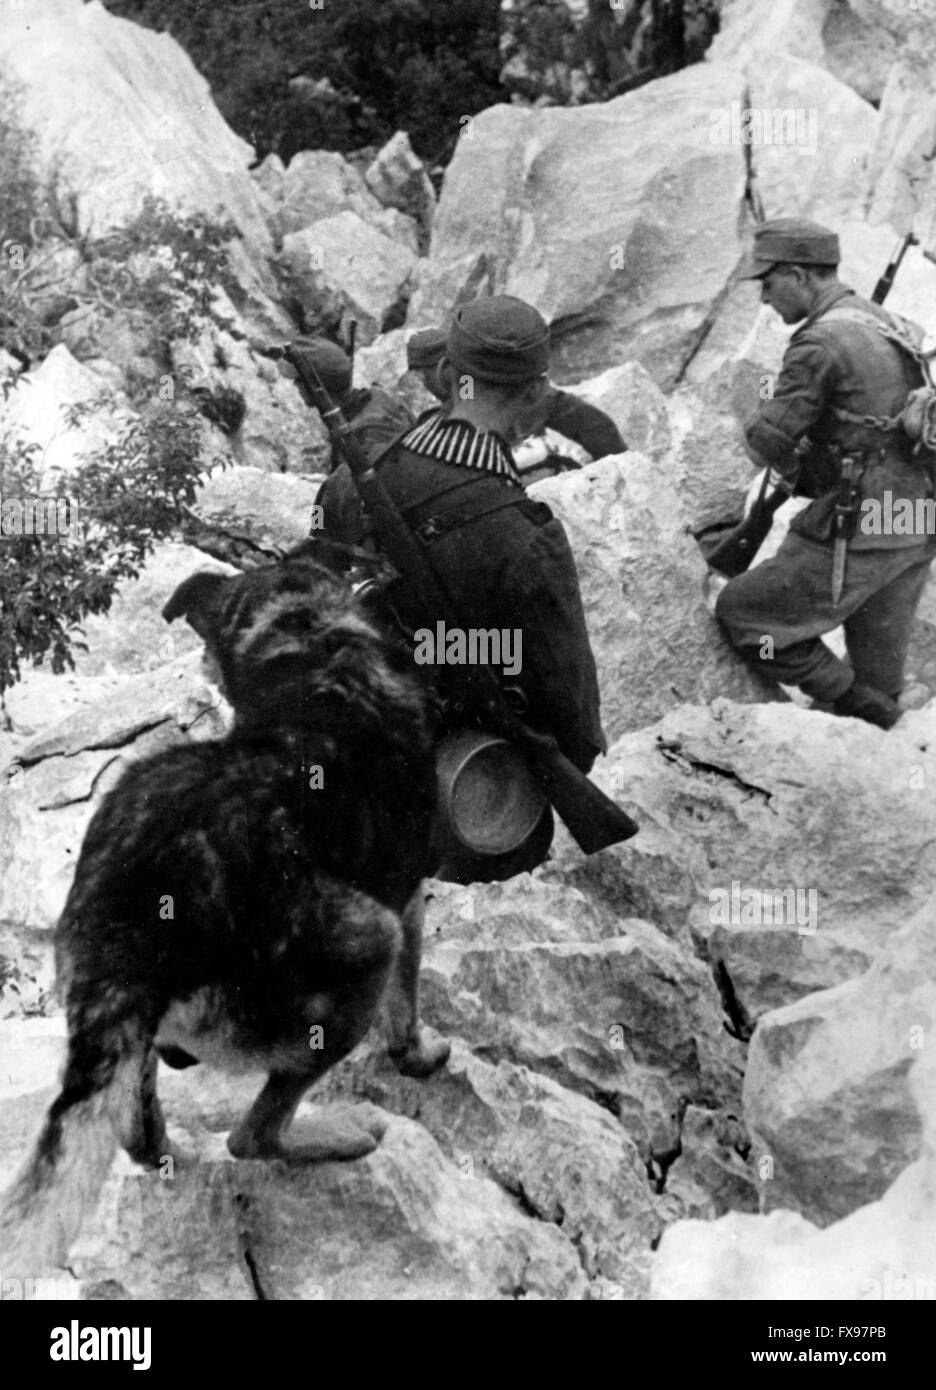 L'image de propagande nazie dépeint des soldats de la Wehrmacht allemande combattant des partisans en Yougoslavie. La photo a été publiée en décembre 1943. Depuis l'été 1942, le nom 'partisan' a été interdit par les Allemands pour des raisons psychologiques et remplacé par le nom 'Banden' (gangs), 'Banditen' (bandits) et 'Bandenbekaempfung' (gangs de combat). Fotoarchiv für Zeitgeschichtee - PAS DE SERVICE DE VIREMENT - Banque D'Images